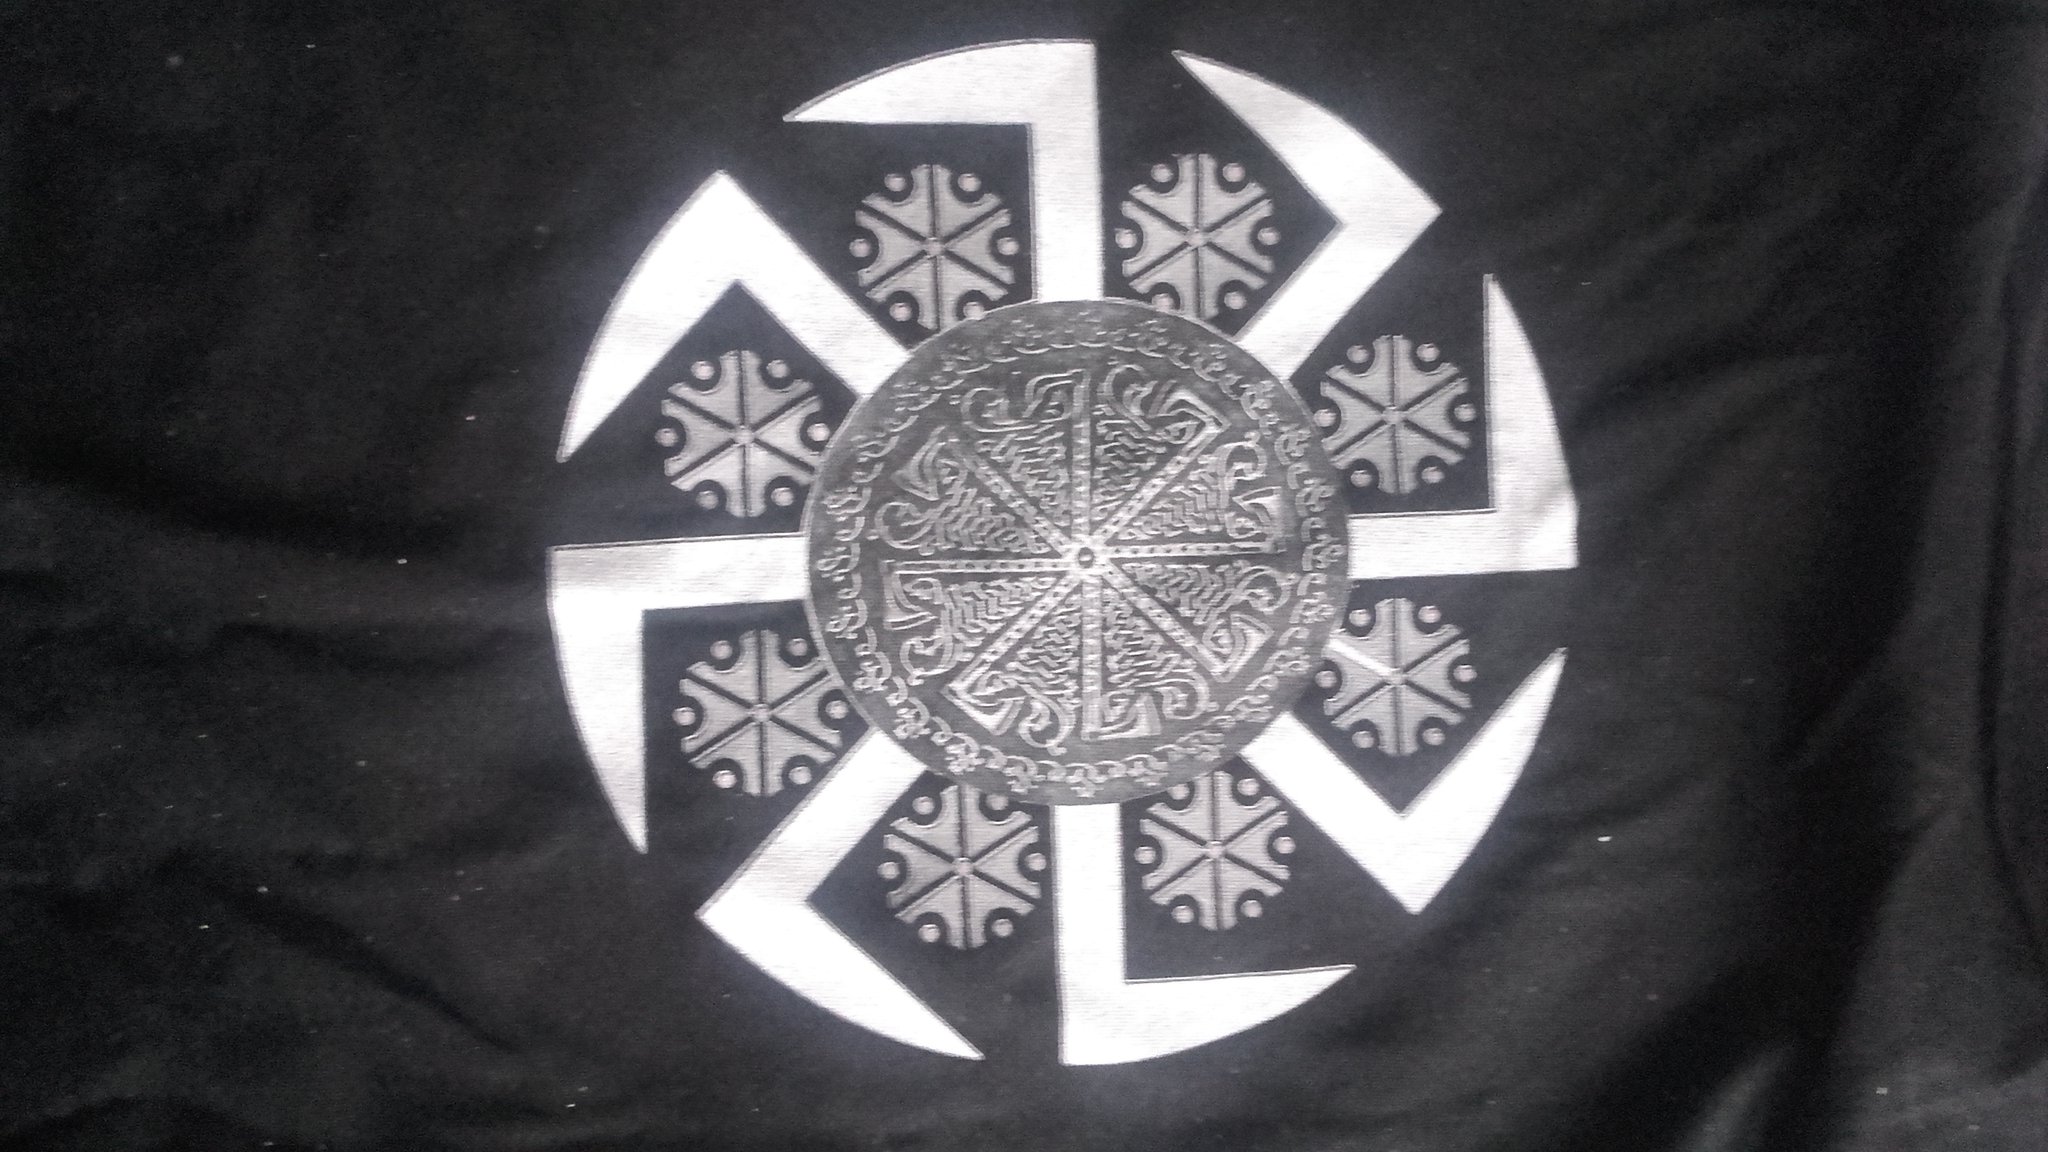 Нацистское солнце. Коловрат (Kolovrat) группа. Флаг древней Руси Коловрат. Штандарт Знамя Коловрат. Коловрат солнце.